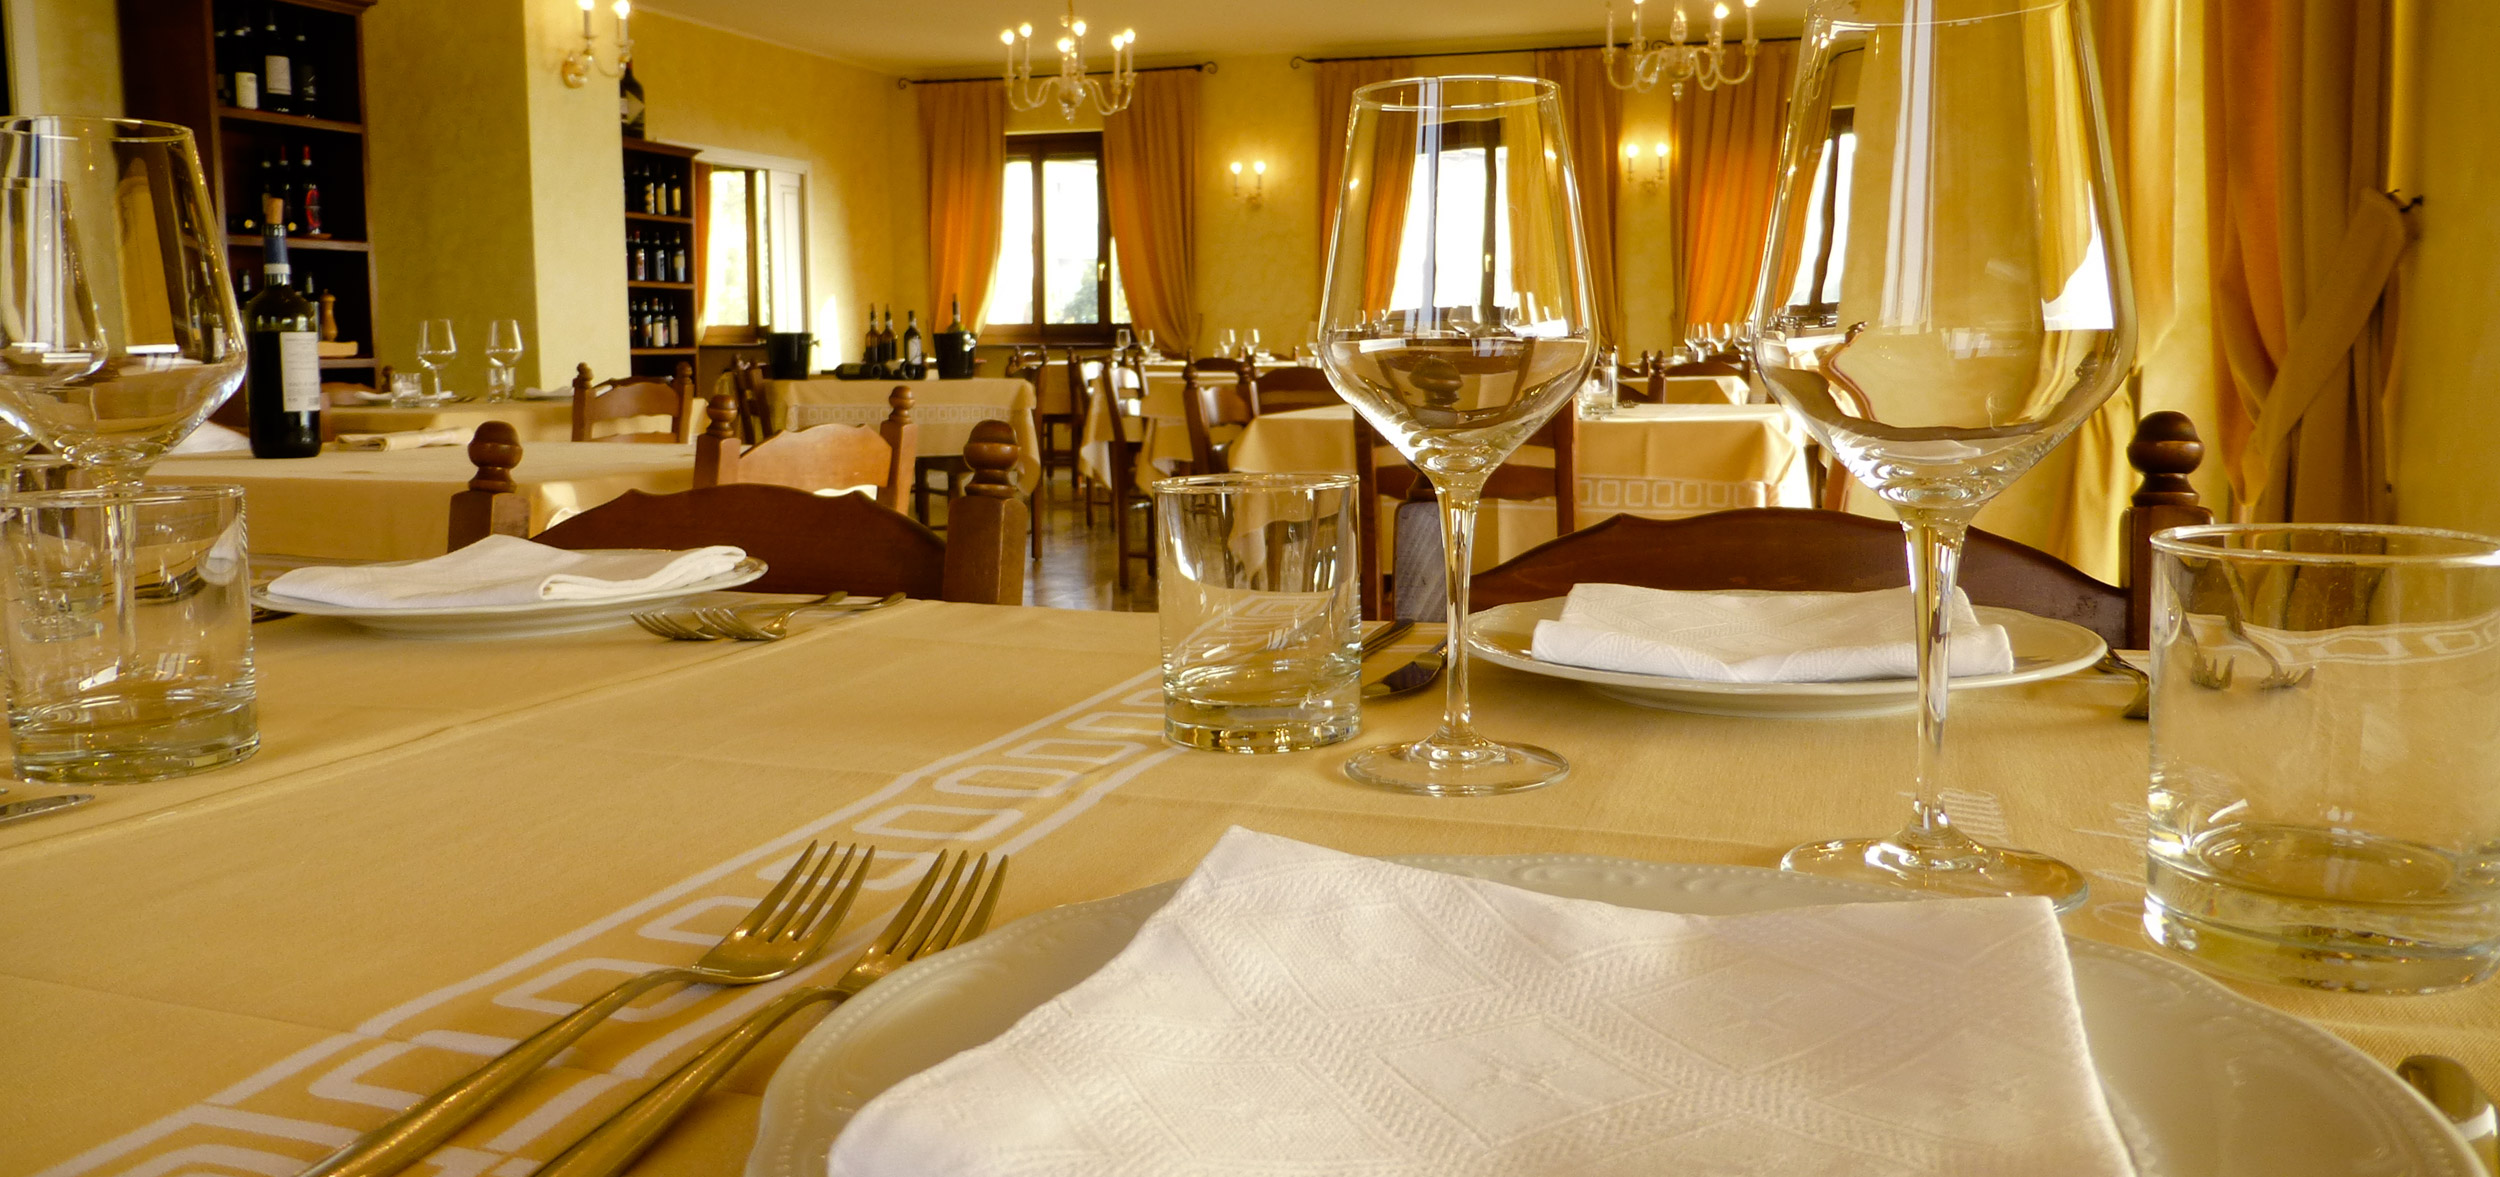 Sala del ristorante panoramico nelle Langhe e Roero